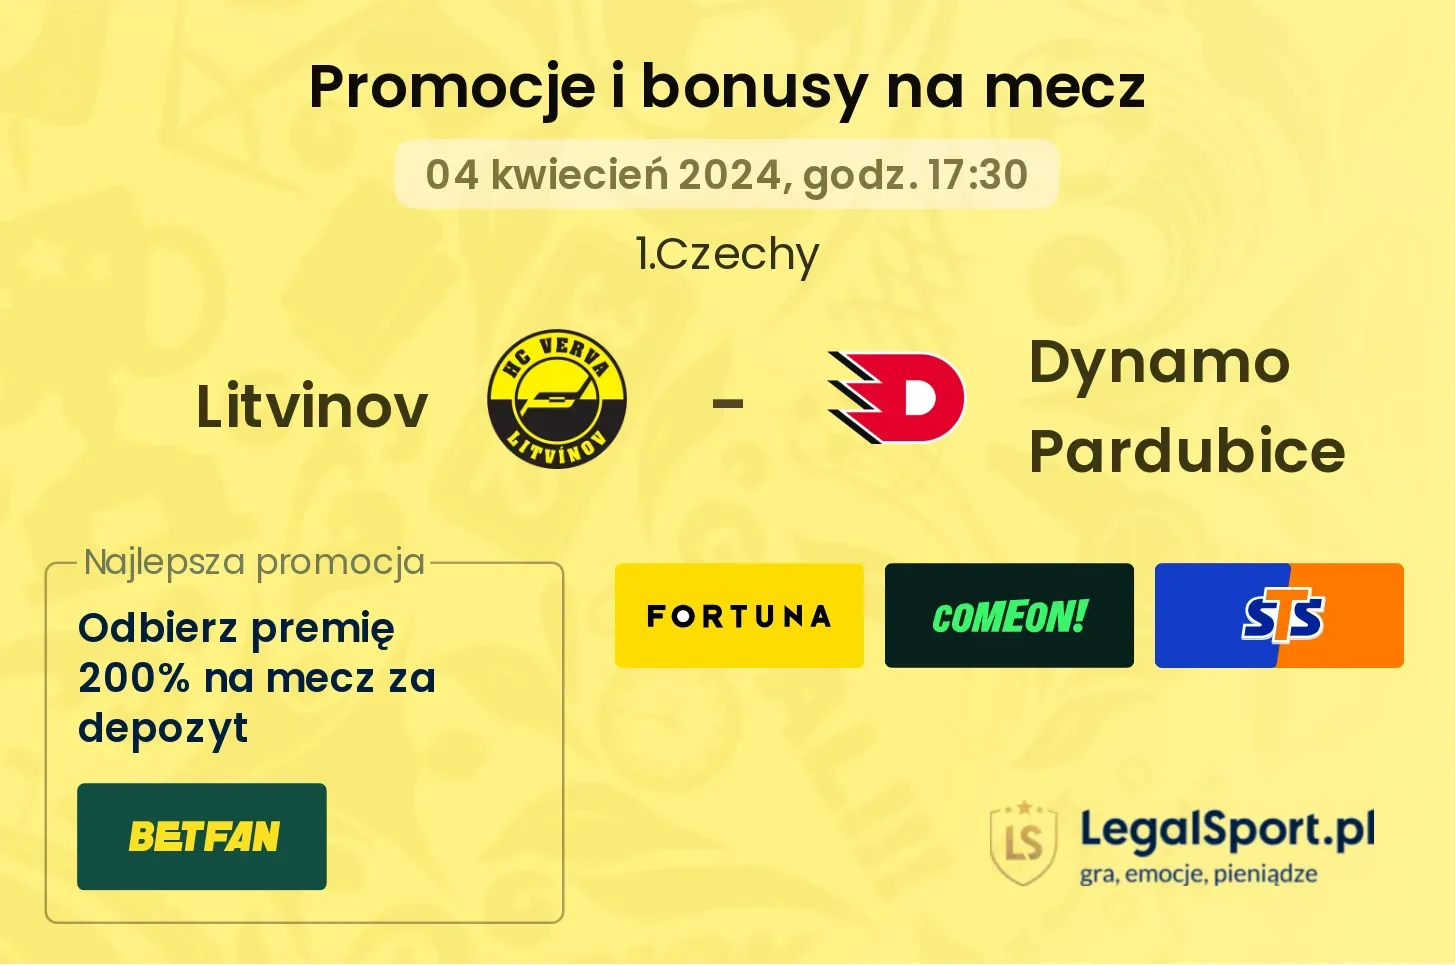 Litvinov - Dynamo Pardubice promocje bonusy na mecz